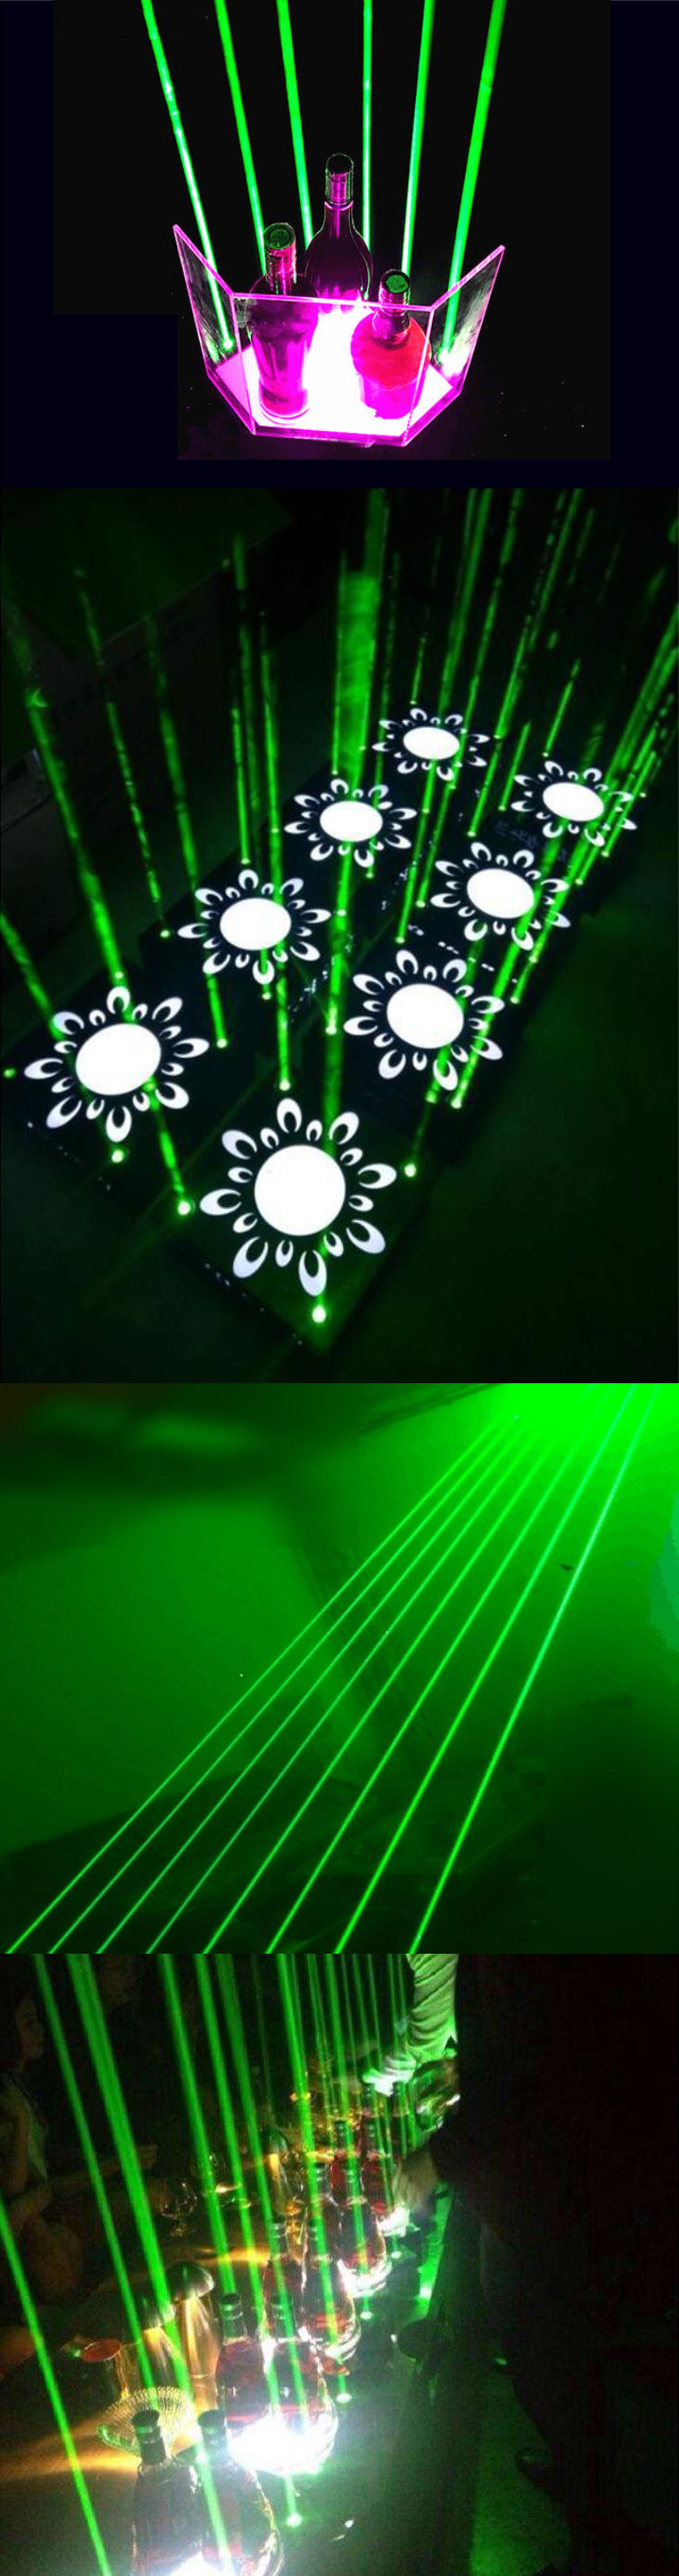 module laser vert